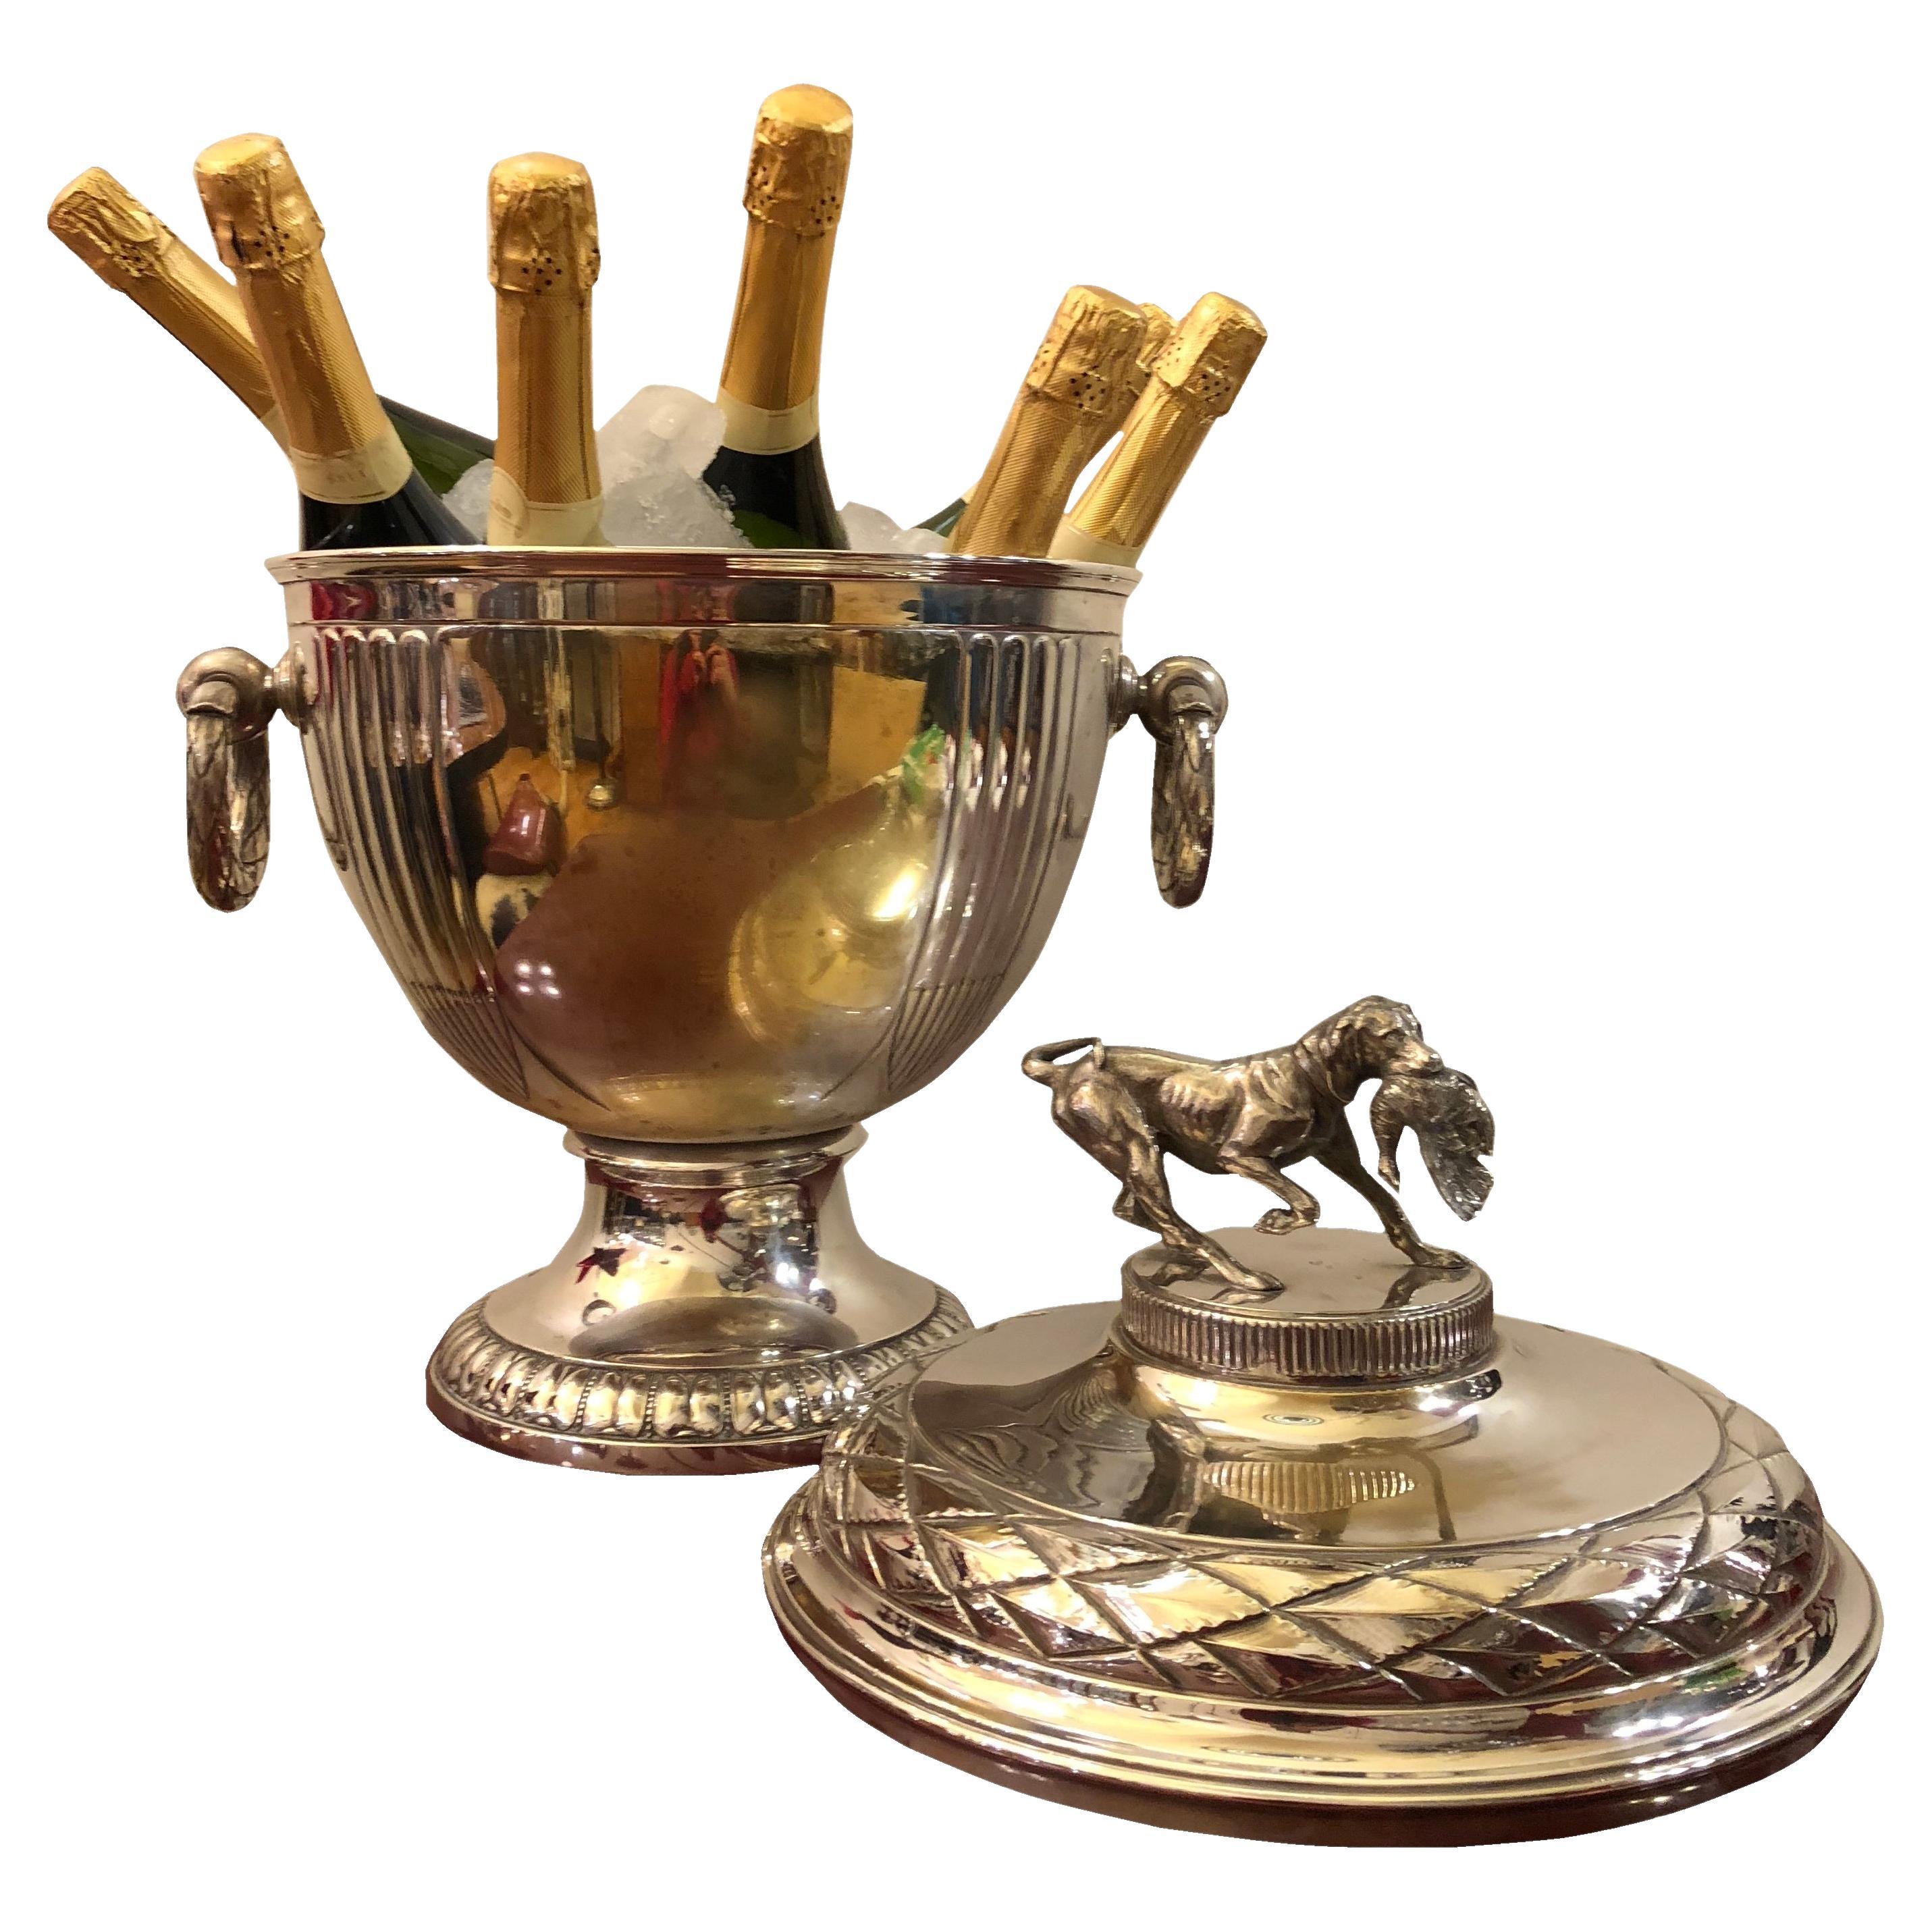 Champagne Cooler Style, Art Nouveau, Jugendstil, Liberty, Year: 1900, Signed Wmf